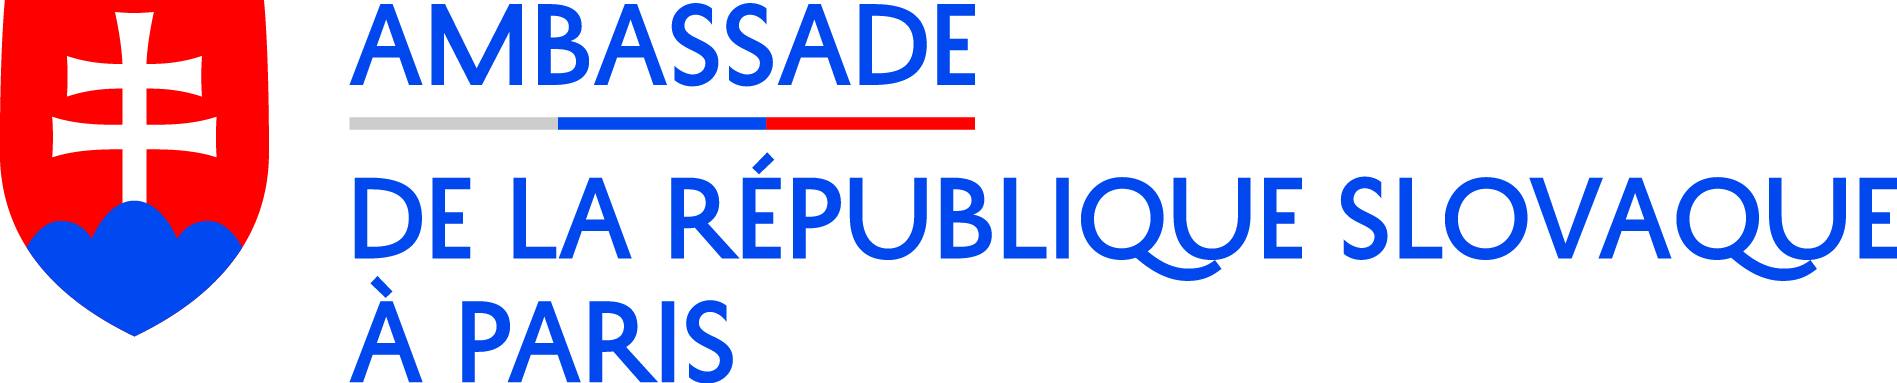 Ambassade de la République slovaque à Paris